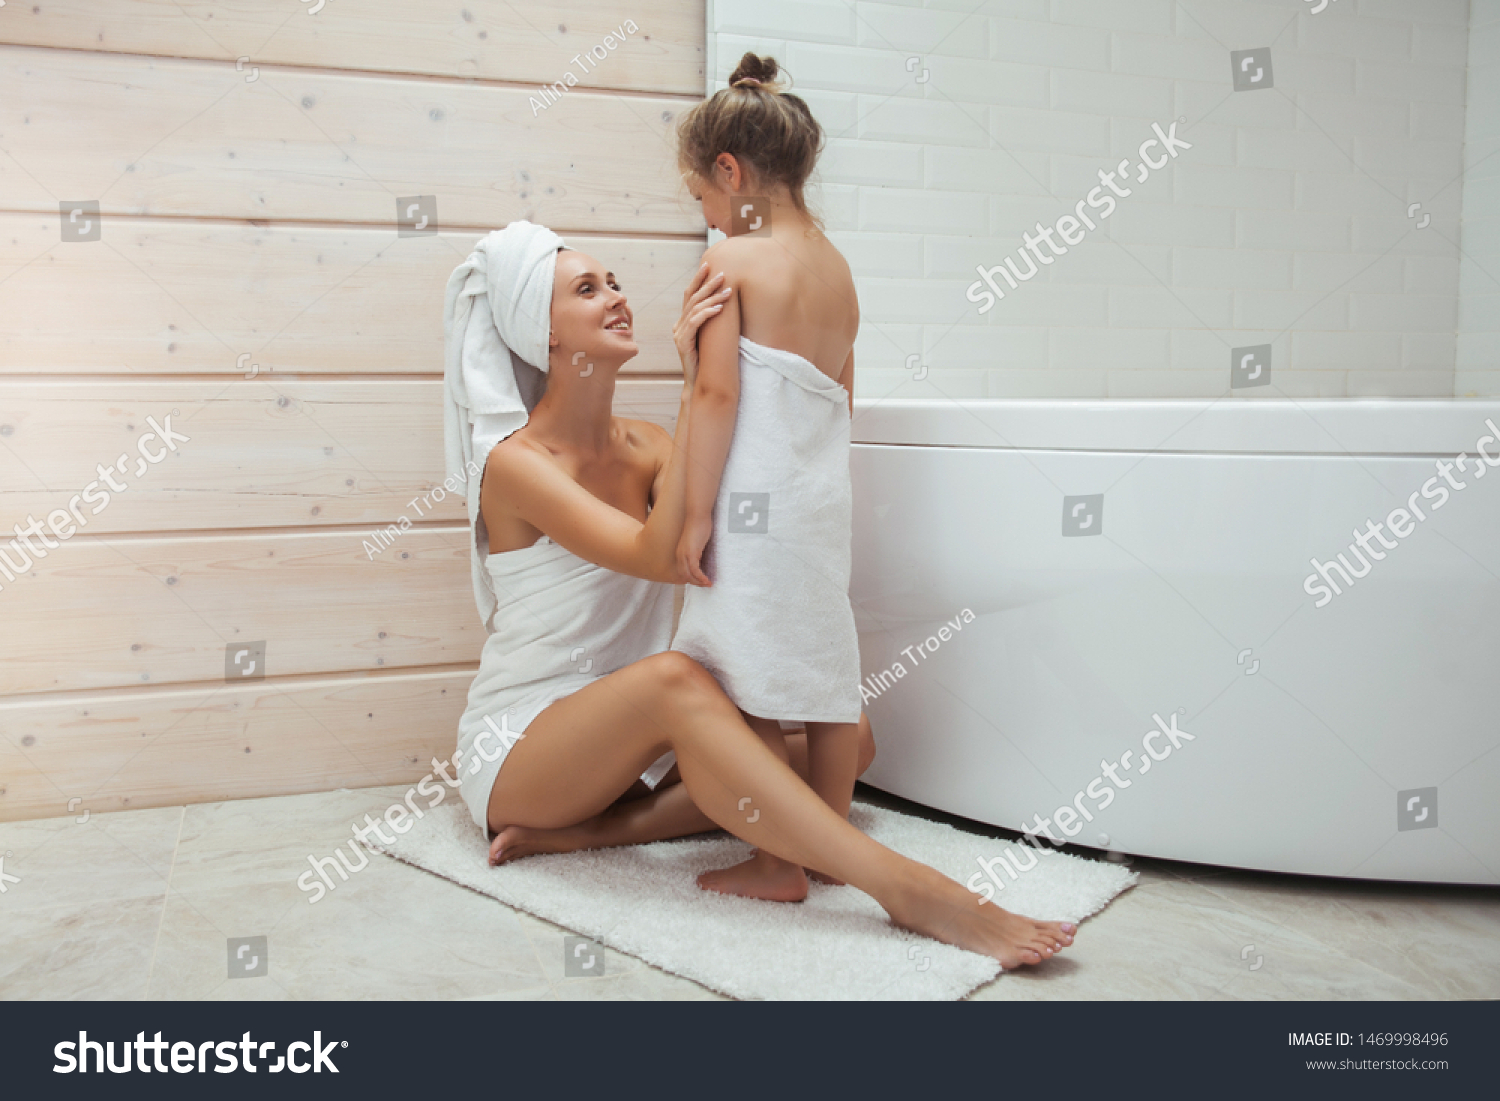 Сын трахает мать в ванной комнате и спальне страстно